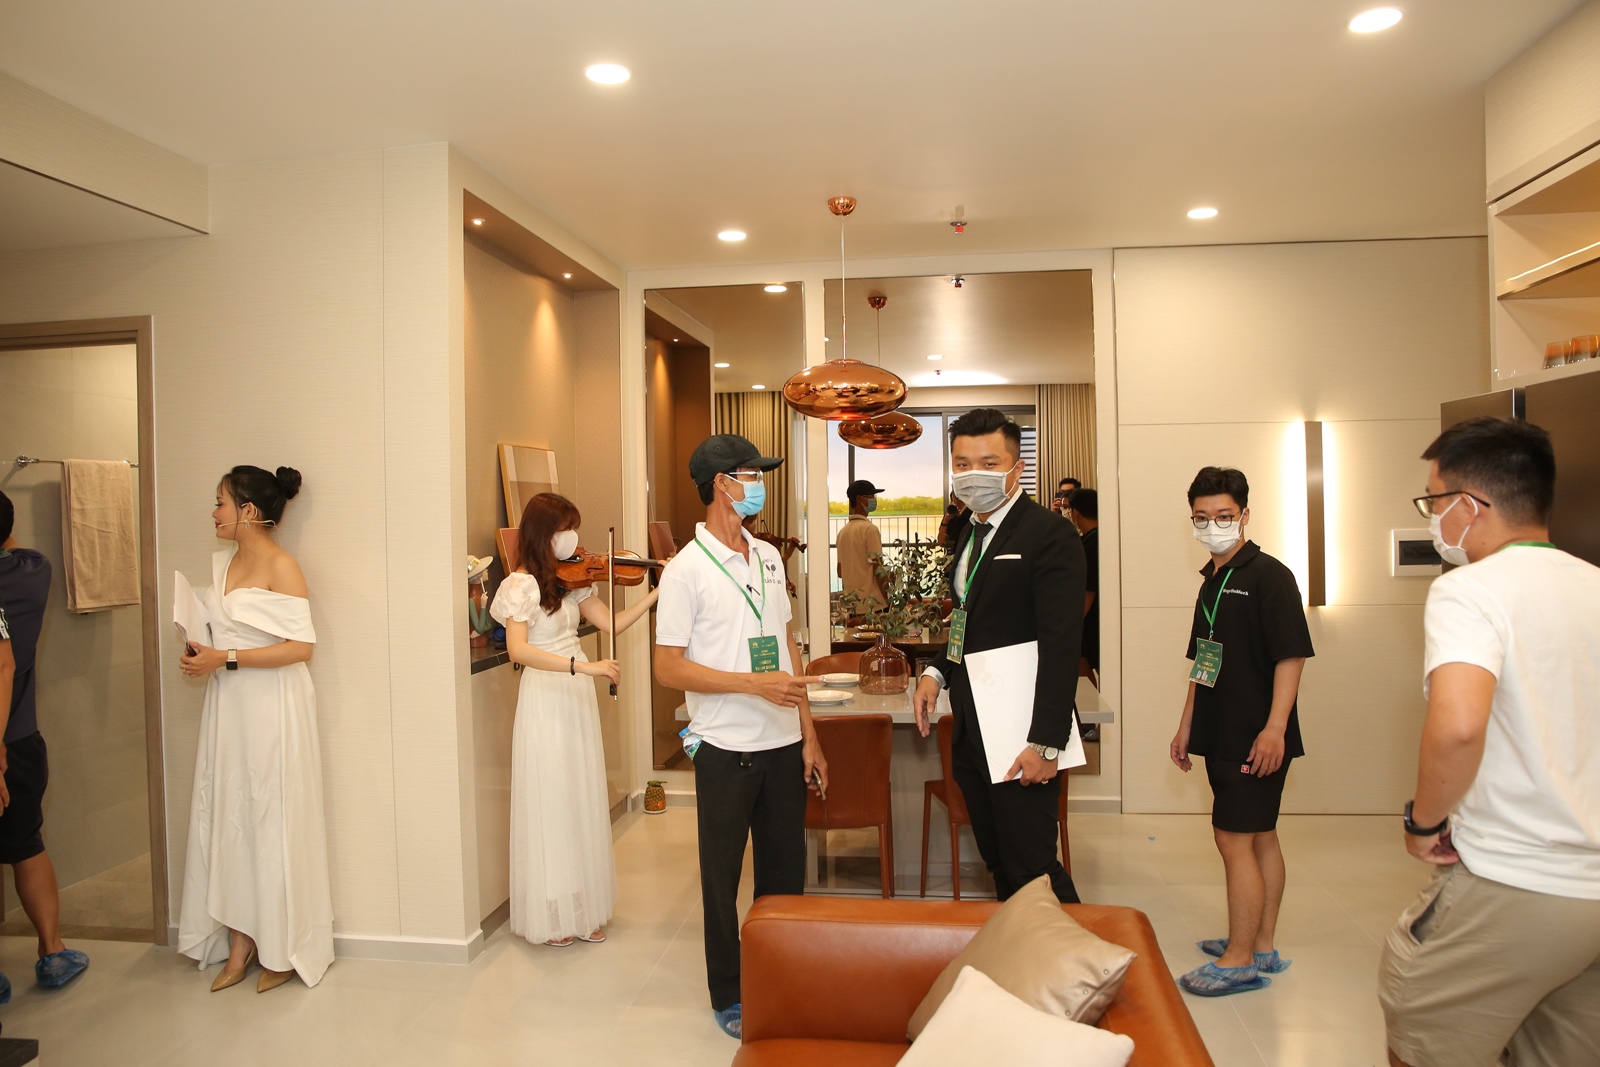 Anh Minh Tuấn hài lòng khi đến tham quan căn hộ mẫu, anh cho biết đang cân nhắc để mua căn 3 phòng ngủ để gia đình ở cùng nhau - Ảnh: MT Eastmark City